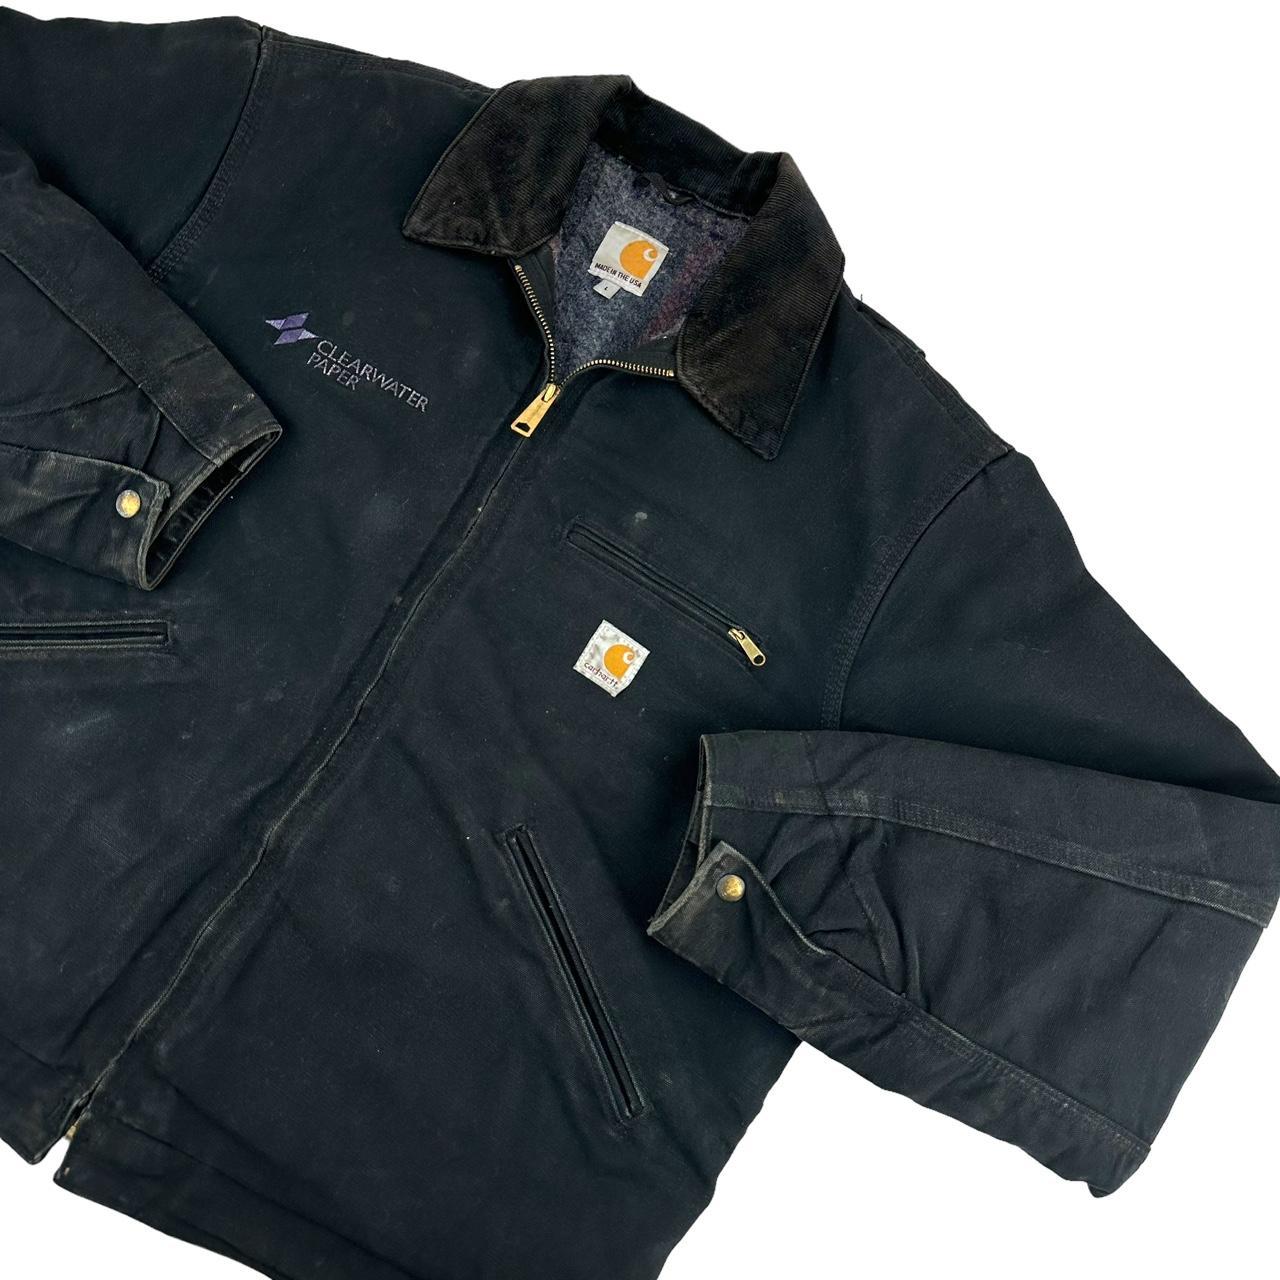 RARE Vintage J001 BLK Carhartt Detroit Jacket Made... - Depop